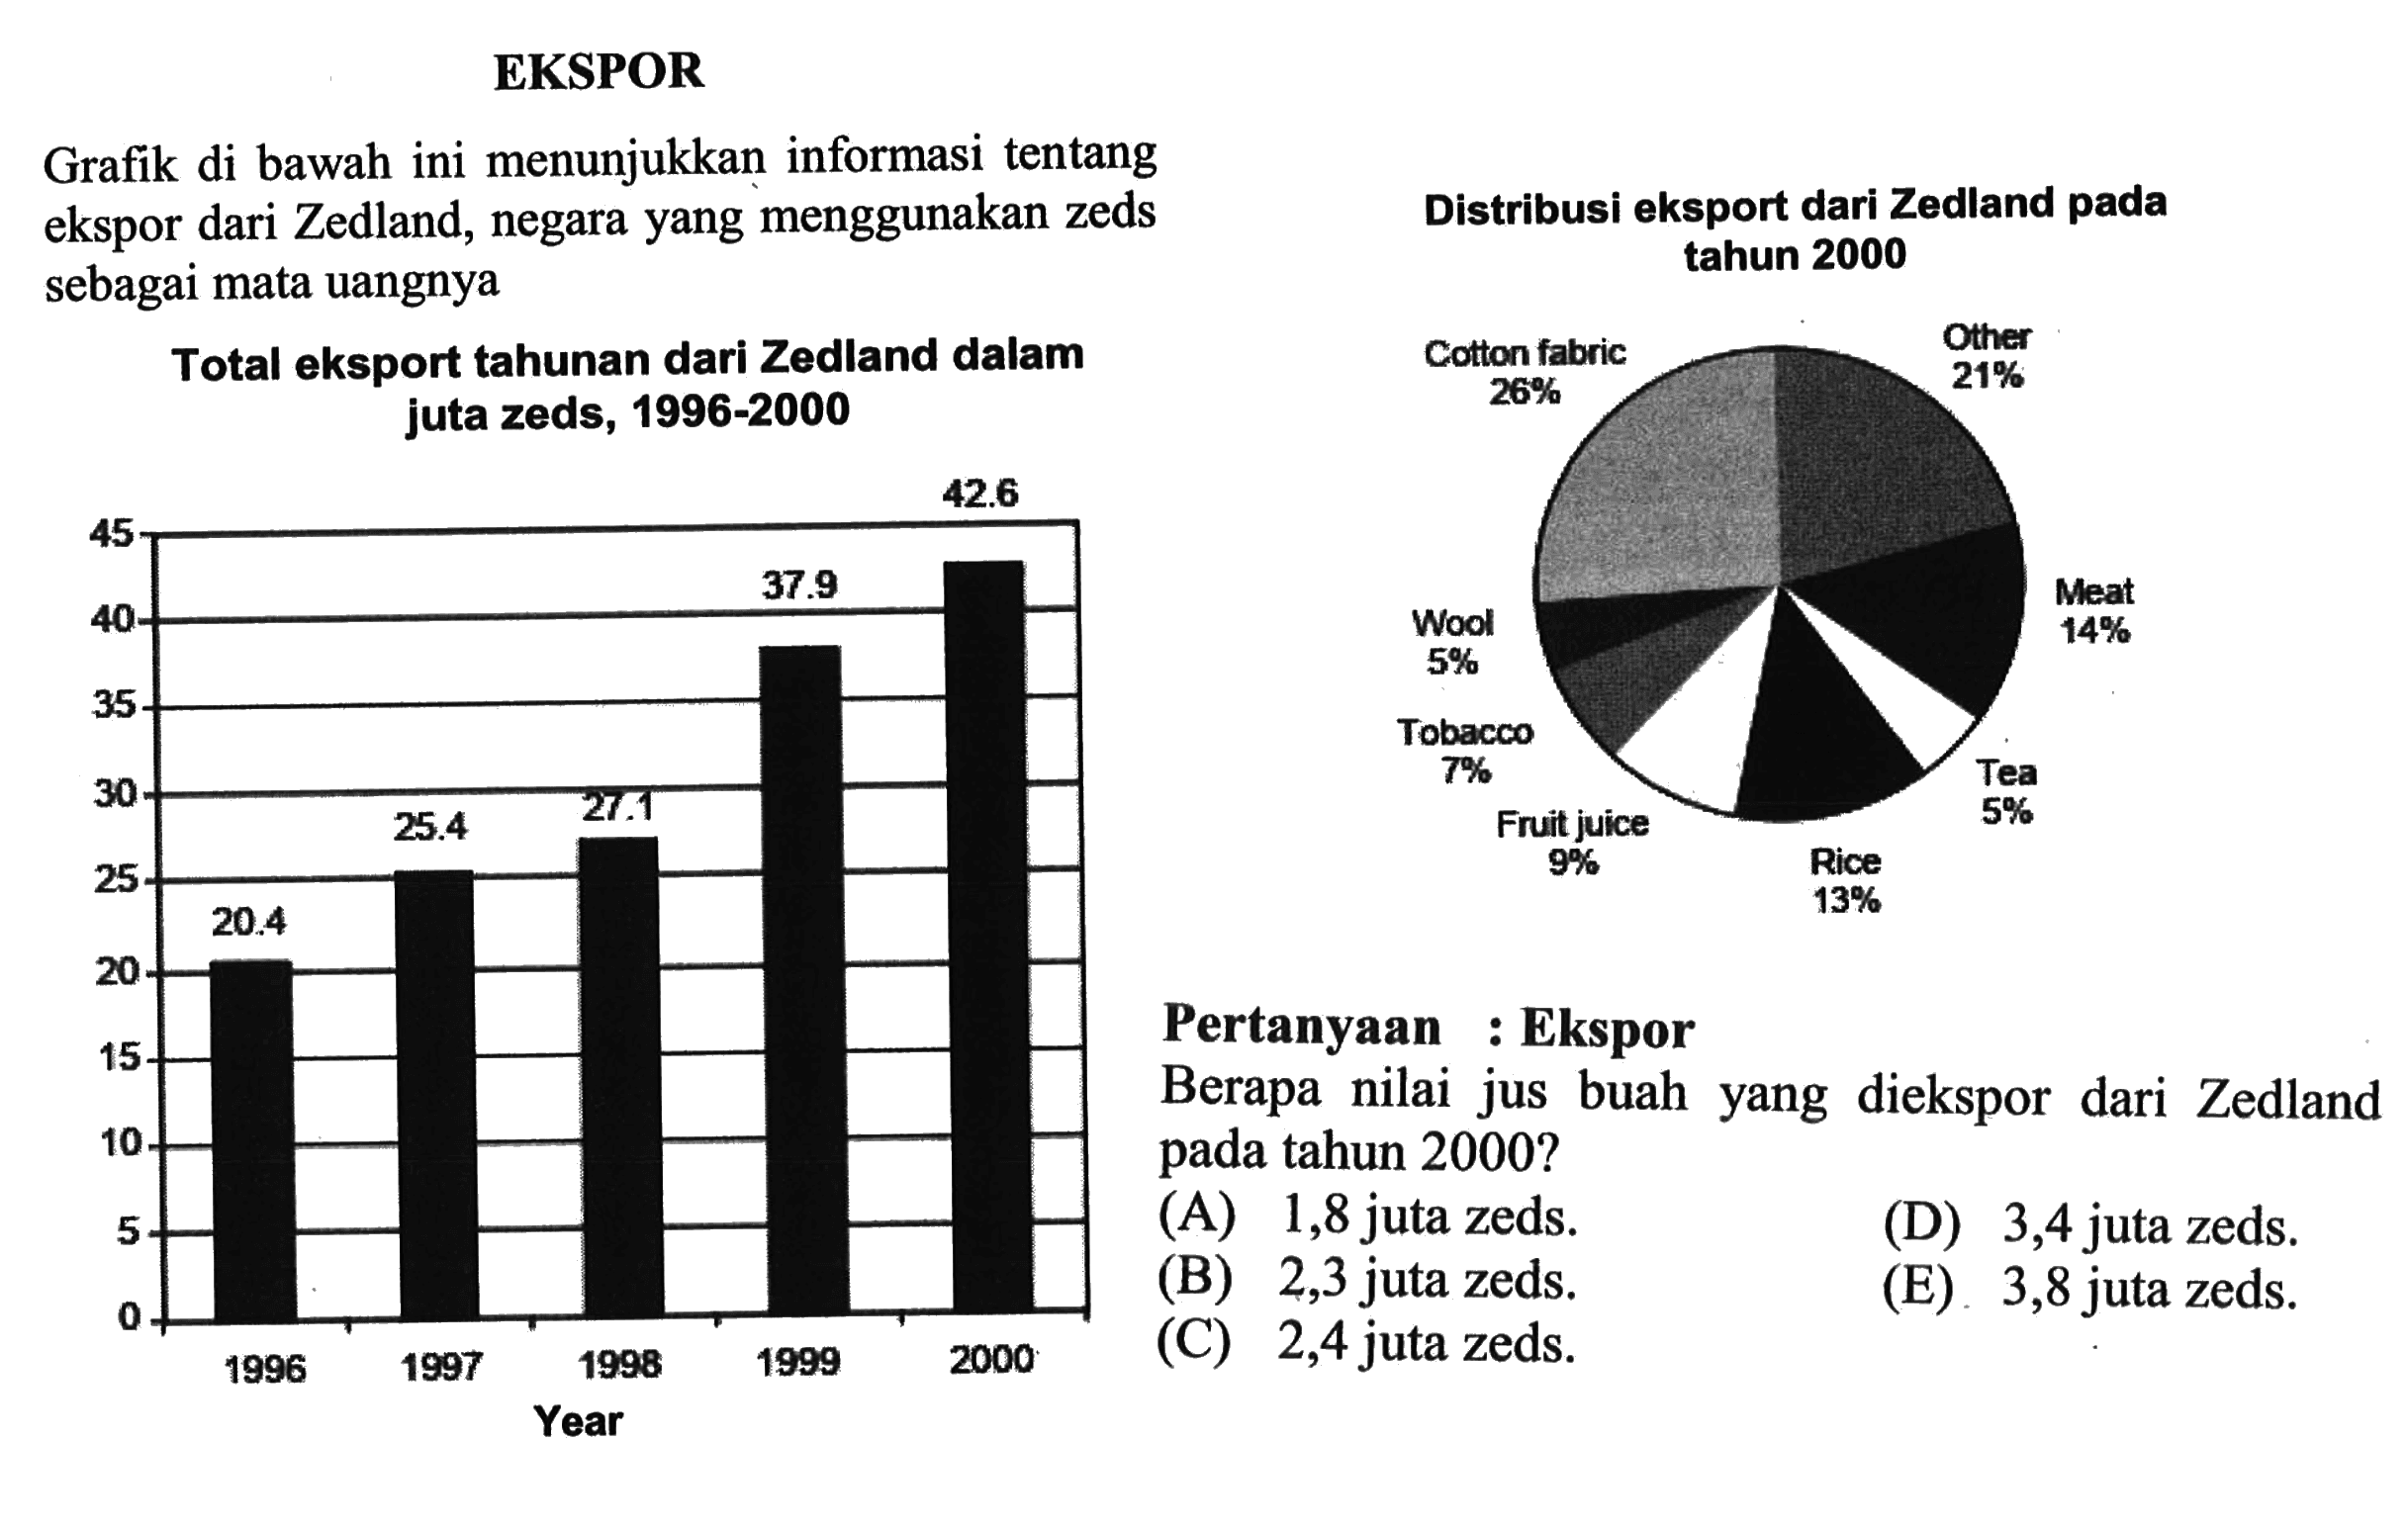 EKSPORGrafik di bawah ini menunjukkan informasi tentang ekspor dari Zedland, negara yang menggunakan zeds sebagai mata uangnya Total eksport tahunan dari Zedland dalam juta zeds, 1996-2000 20,4 25,4 27,1 37,9 42,6 Distribusi eksport dari Zedland pada tahun 2000 Other 21% Cotton fabric 26% Wool 5% Meat 14% Tobacco 7% Tea 5% Fruit juice 9% Rice 13%Pertanyaan : Ekspor Berapa nilai jus buah yang diekspor dari Zedland pada tahun 2000? (A) 1,8 juta zeds. (D) 3,4 juta zeds. (A) 1,8 juta zeds. (B) 2,3 juta zeds. (B) 2,3 juta zeds. () 2,4 juta zeds. (E) 3,8 juta zeds.